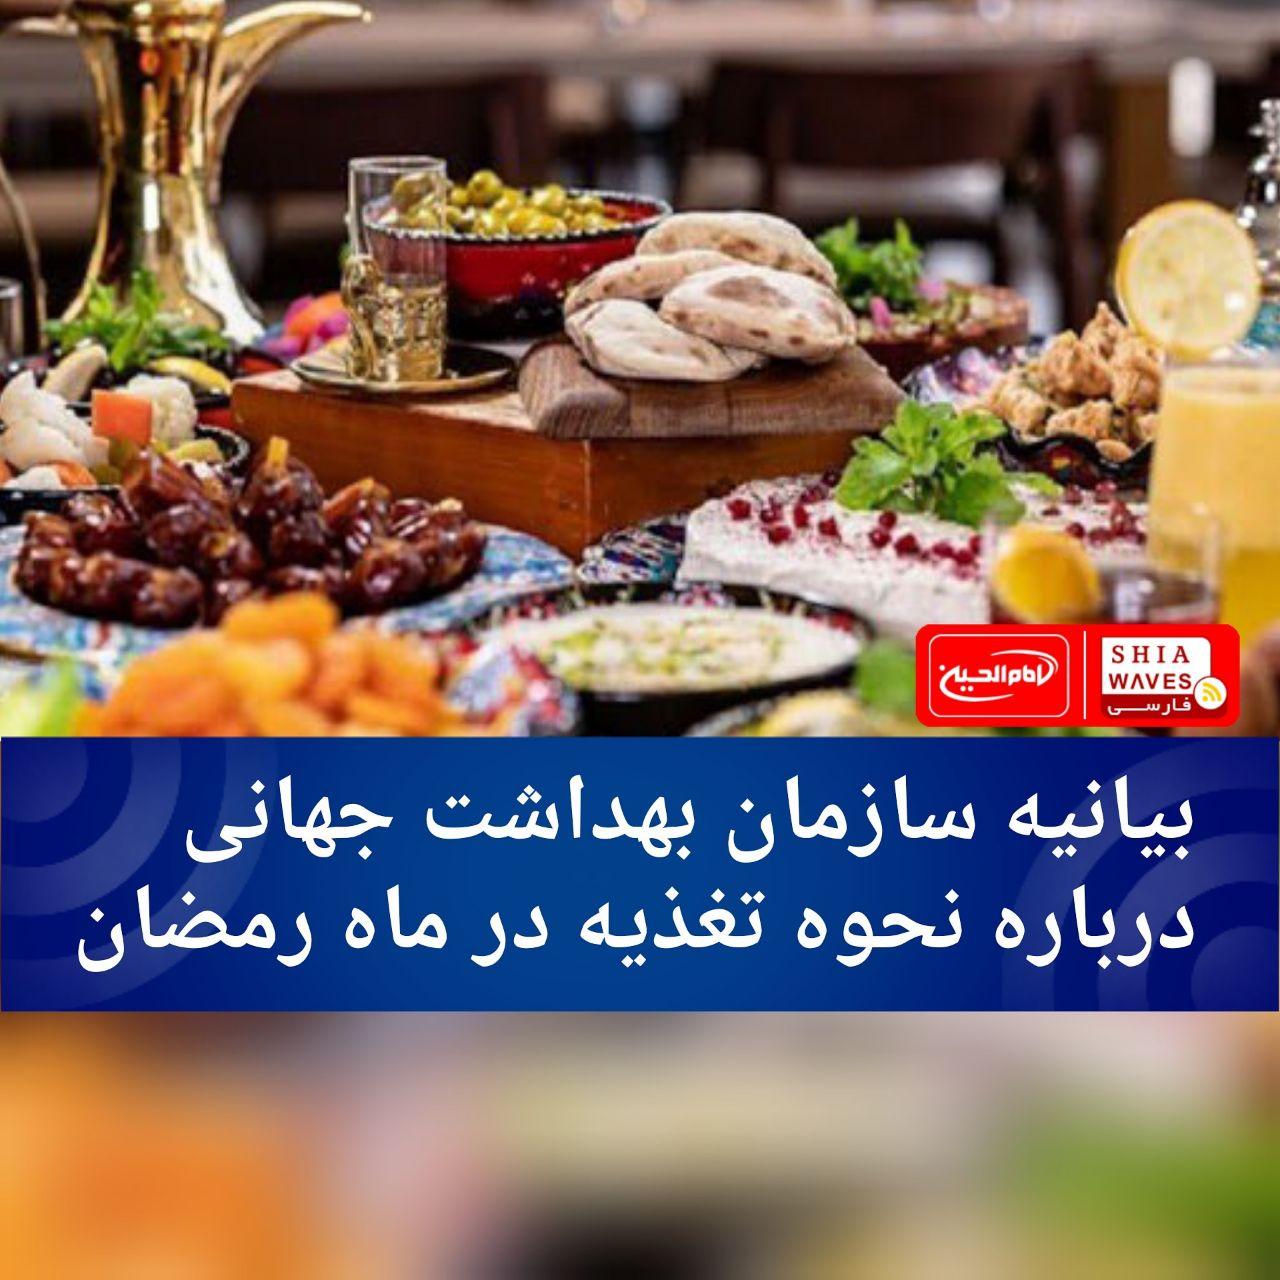 تصویر بیانیه سازمان بهداشت جهانی درباره نحوه تغذیه در ماه رمضان